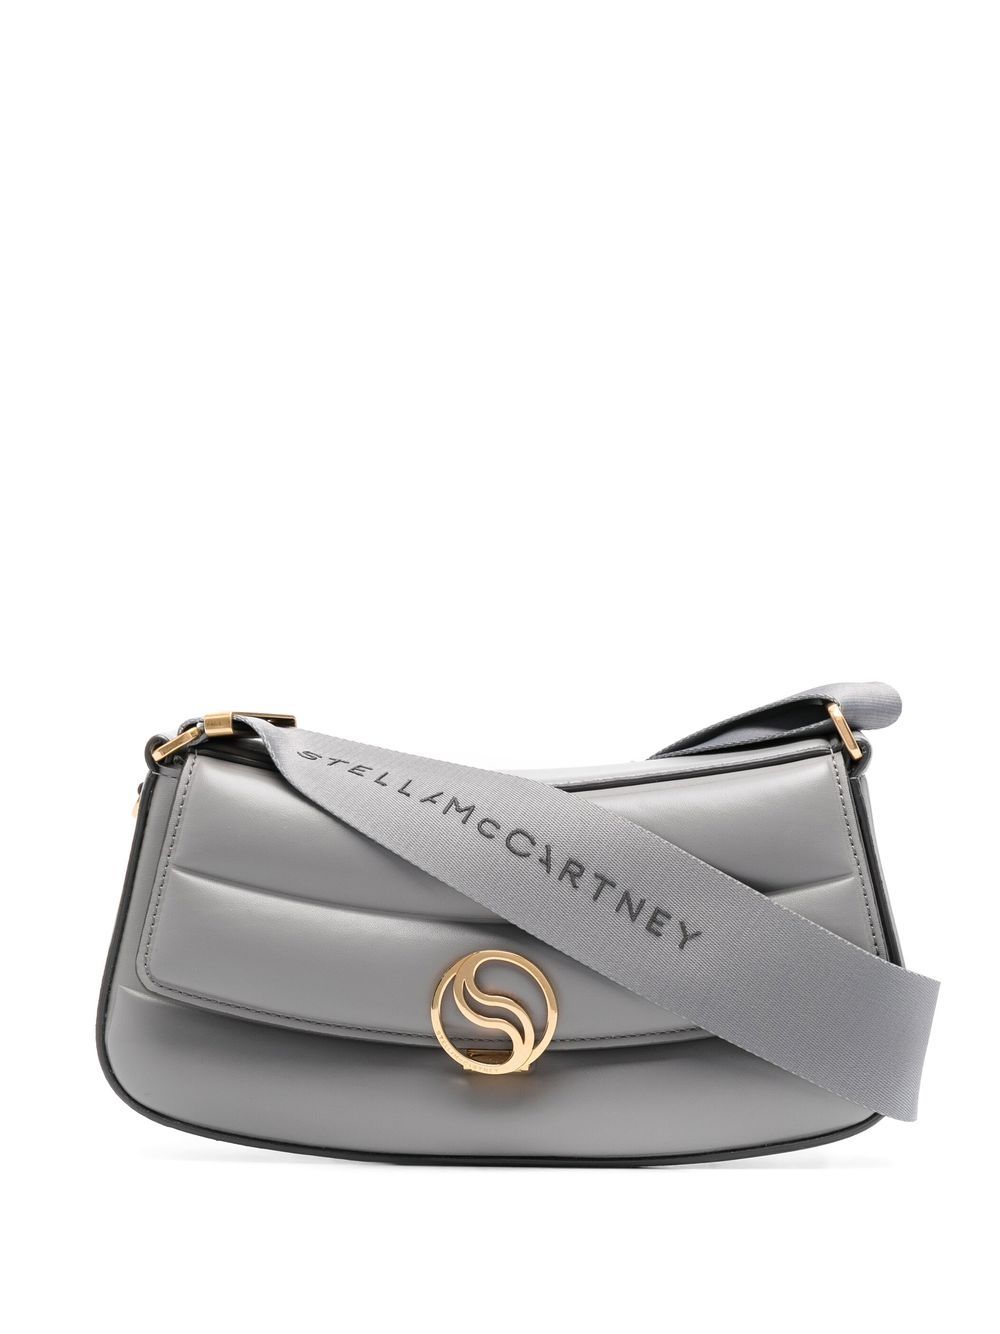 Stella McCartney S logo-plaque curved shoulder bag - Grey